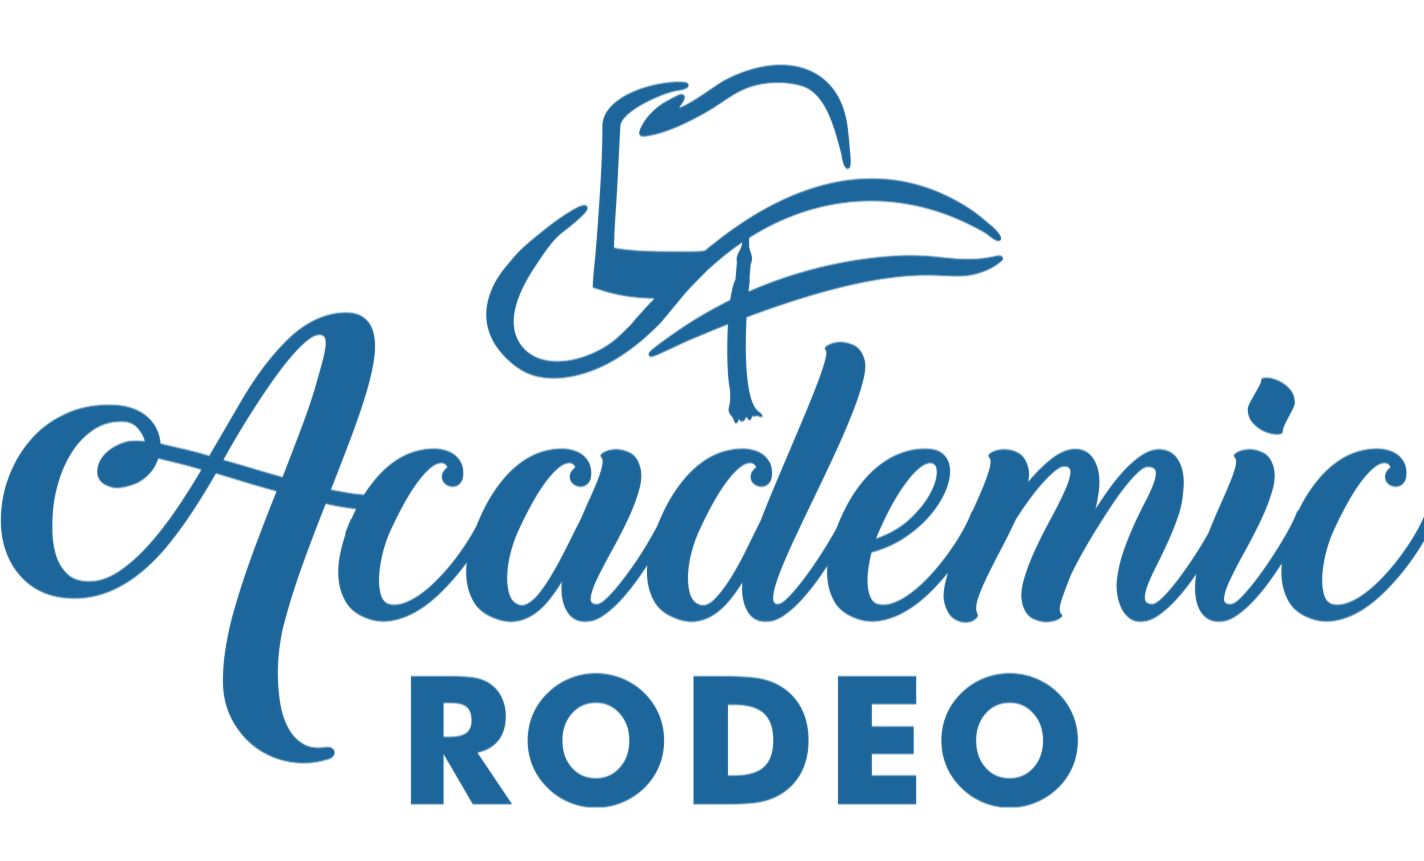 academic rodeo